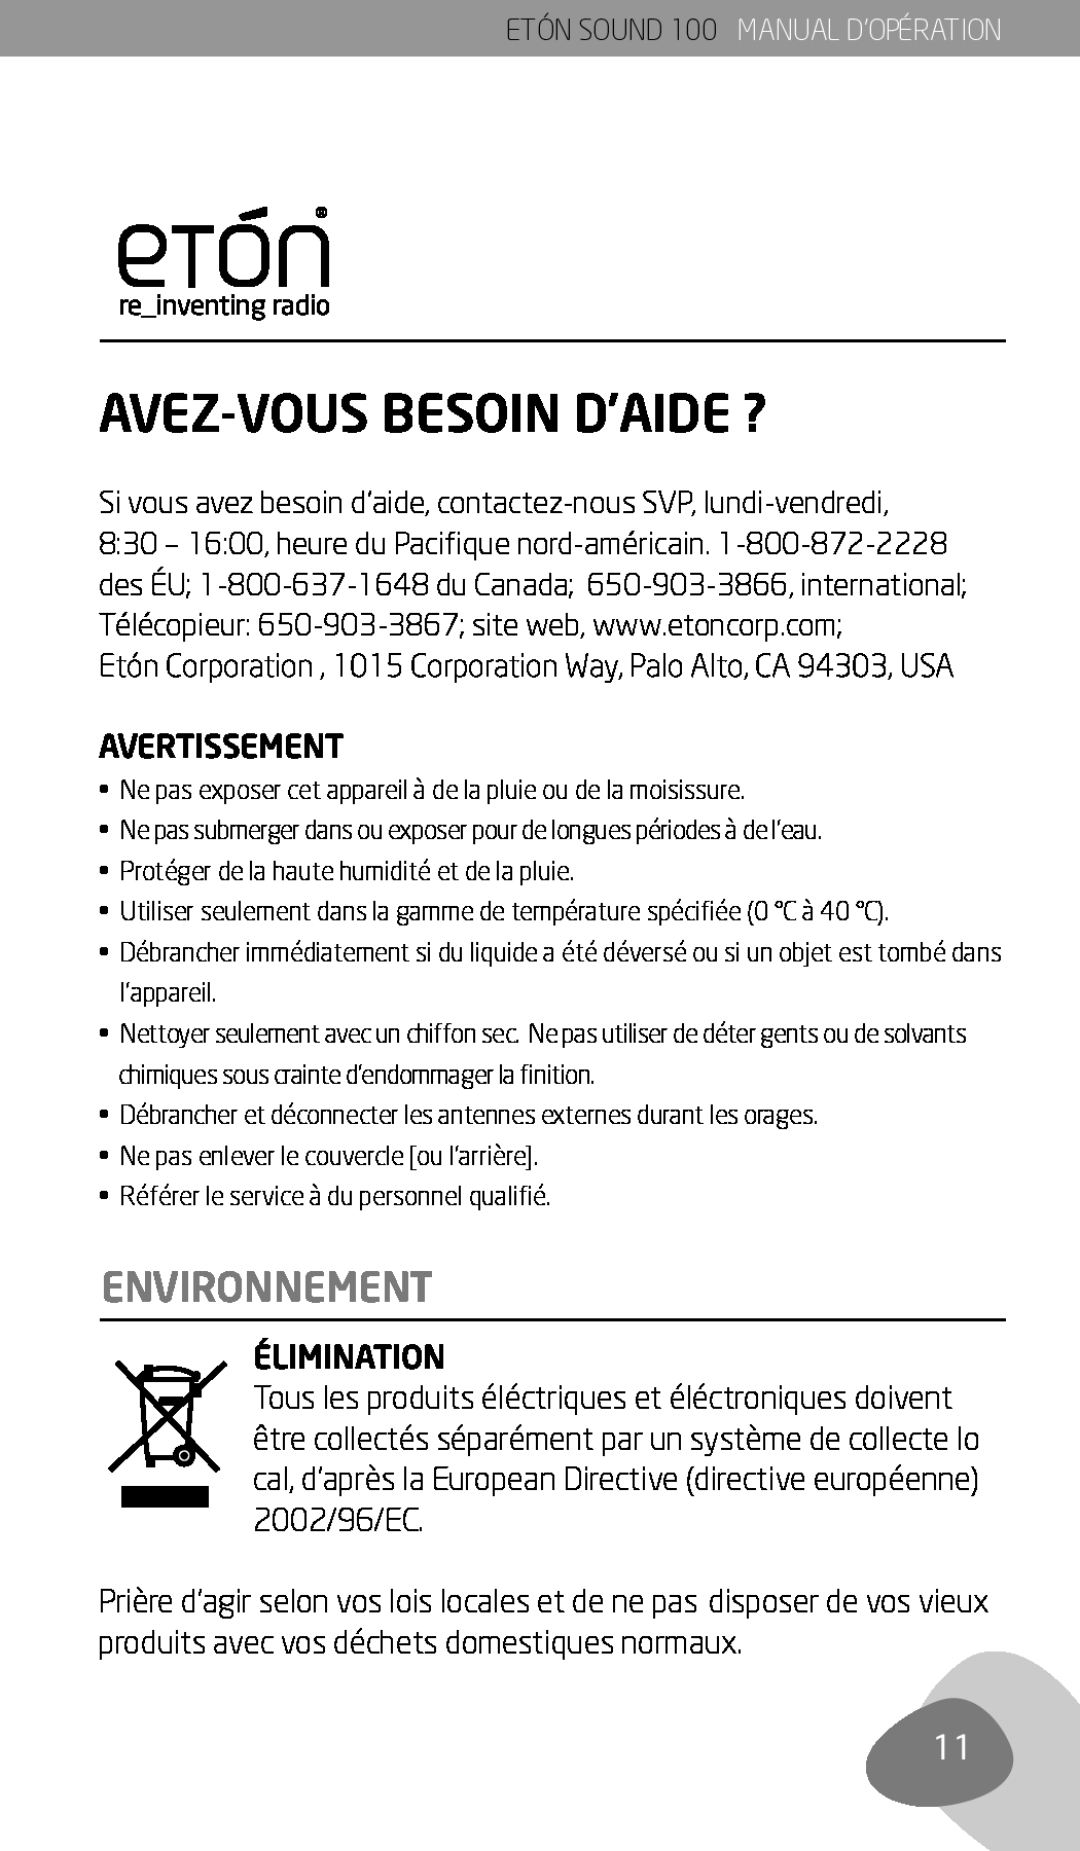 Eton Sound 100 owner manual Avez-Vousbesoin D’Aide ?, Environnement, ETÓN SOUND 100 MANUAL D’OPÉRATION 